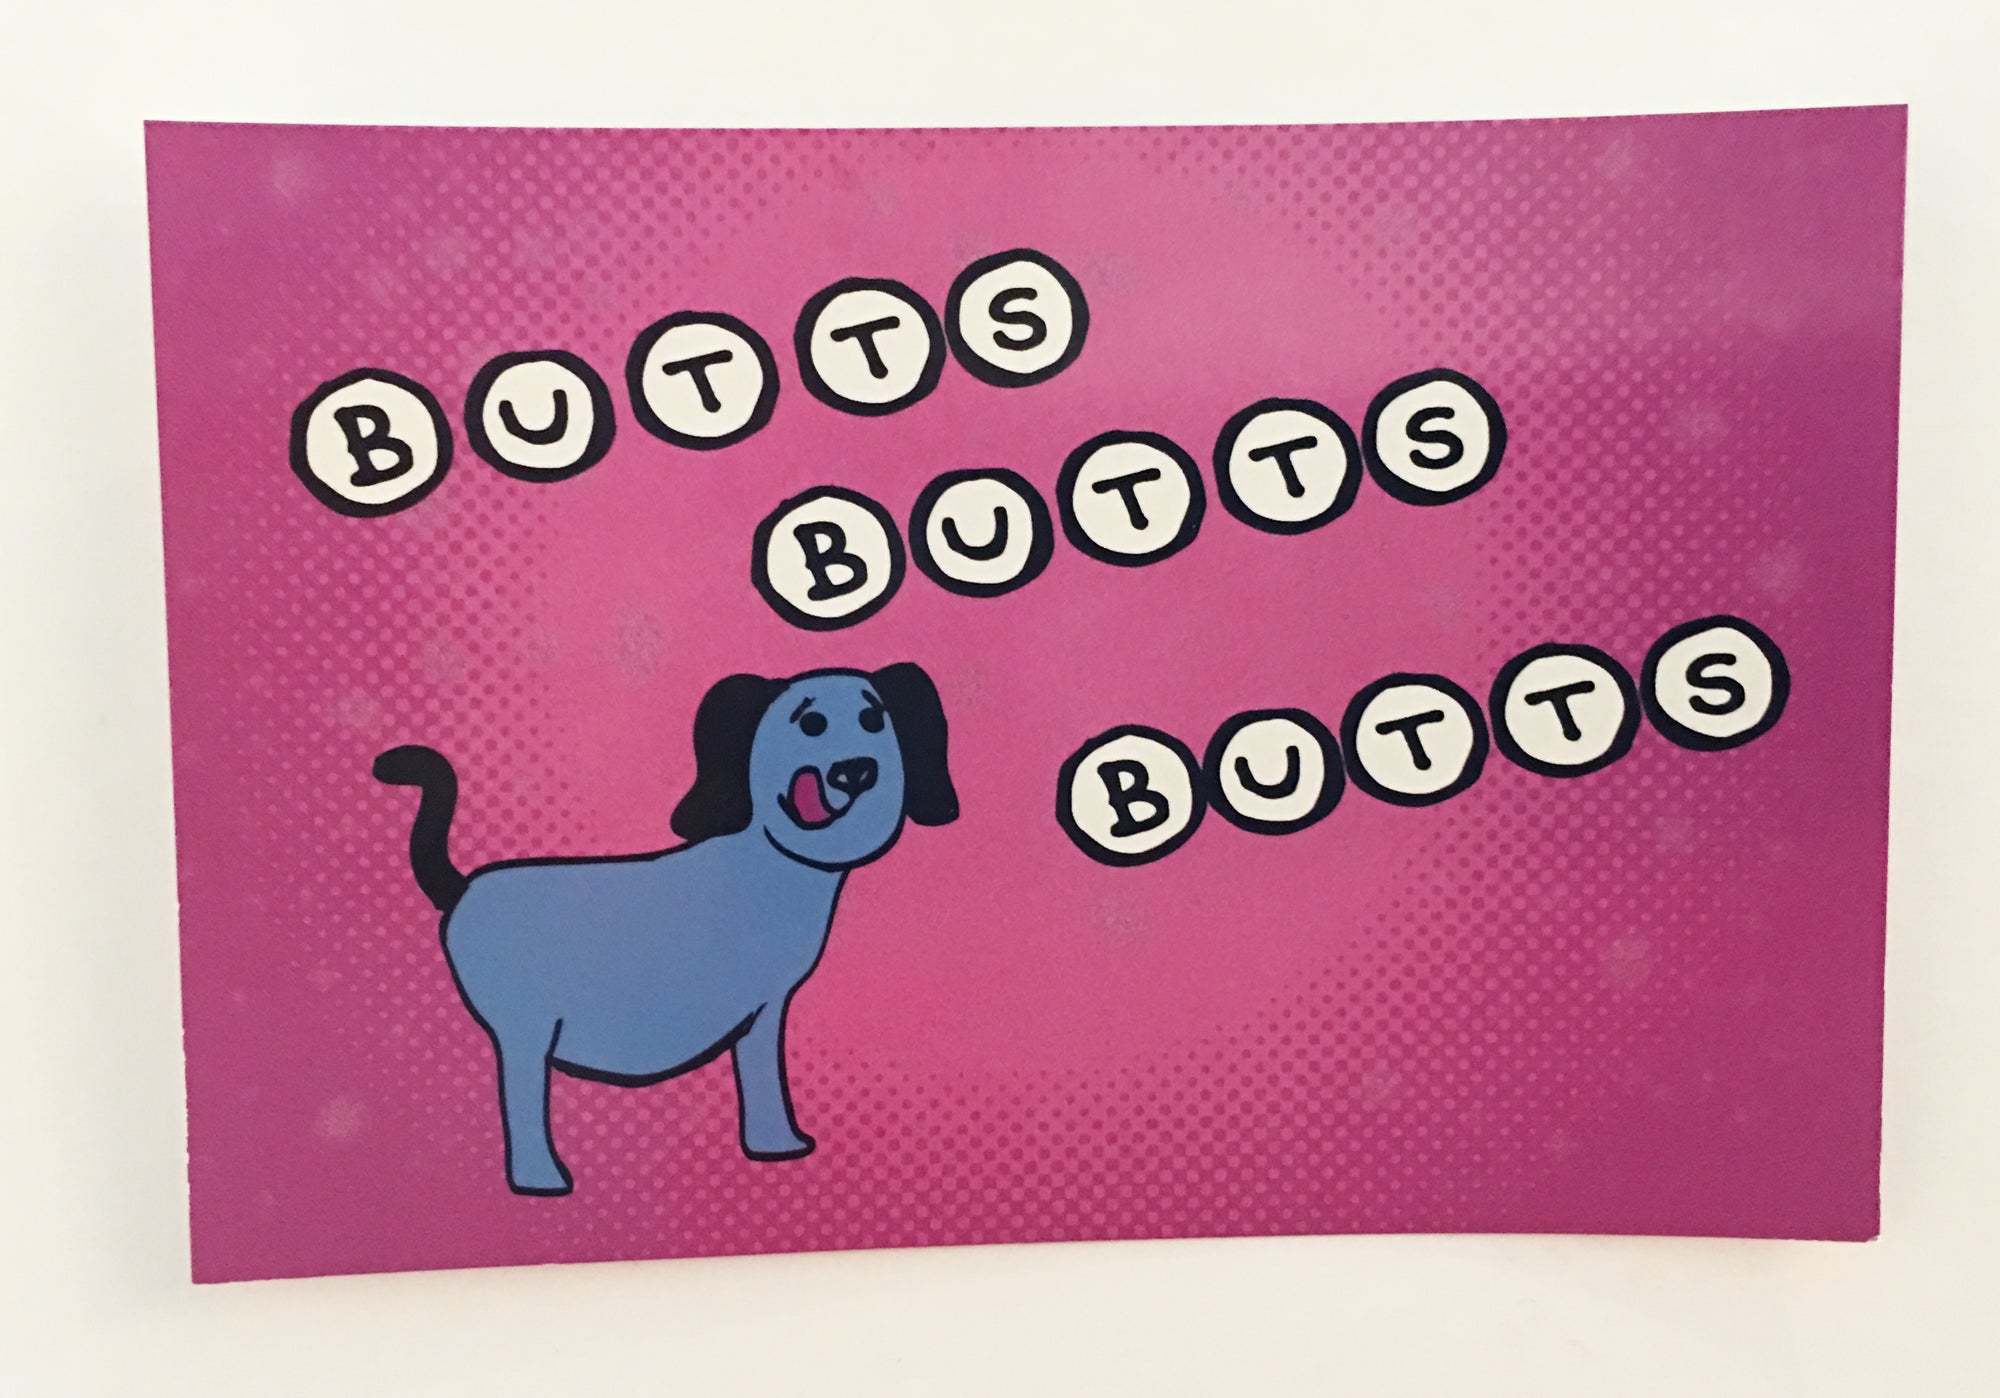 Postcard: Butts Butts Butts - Ten Pack